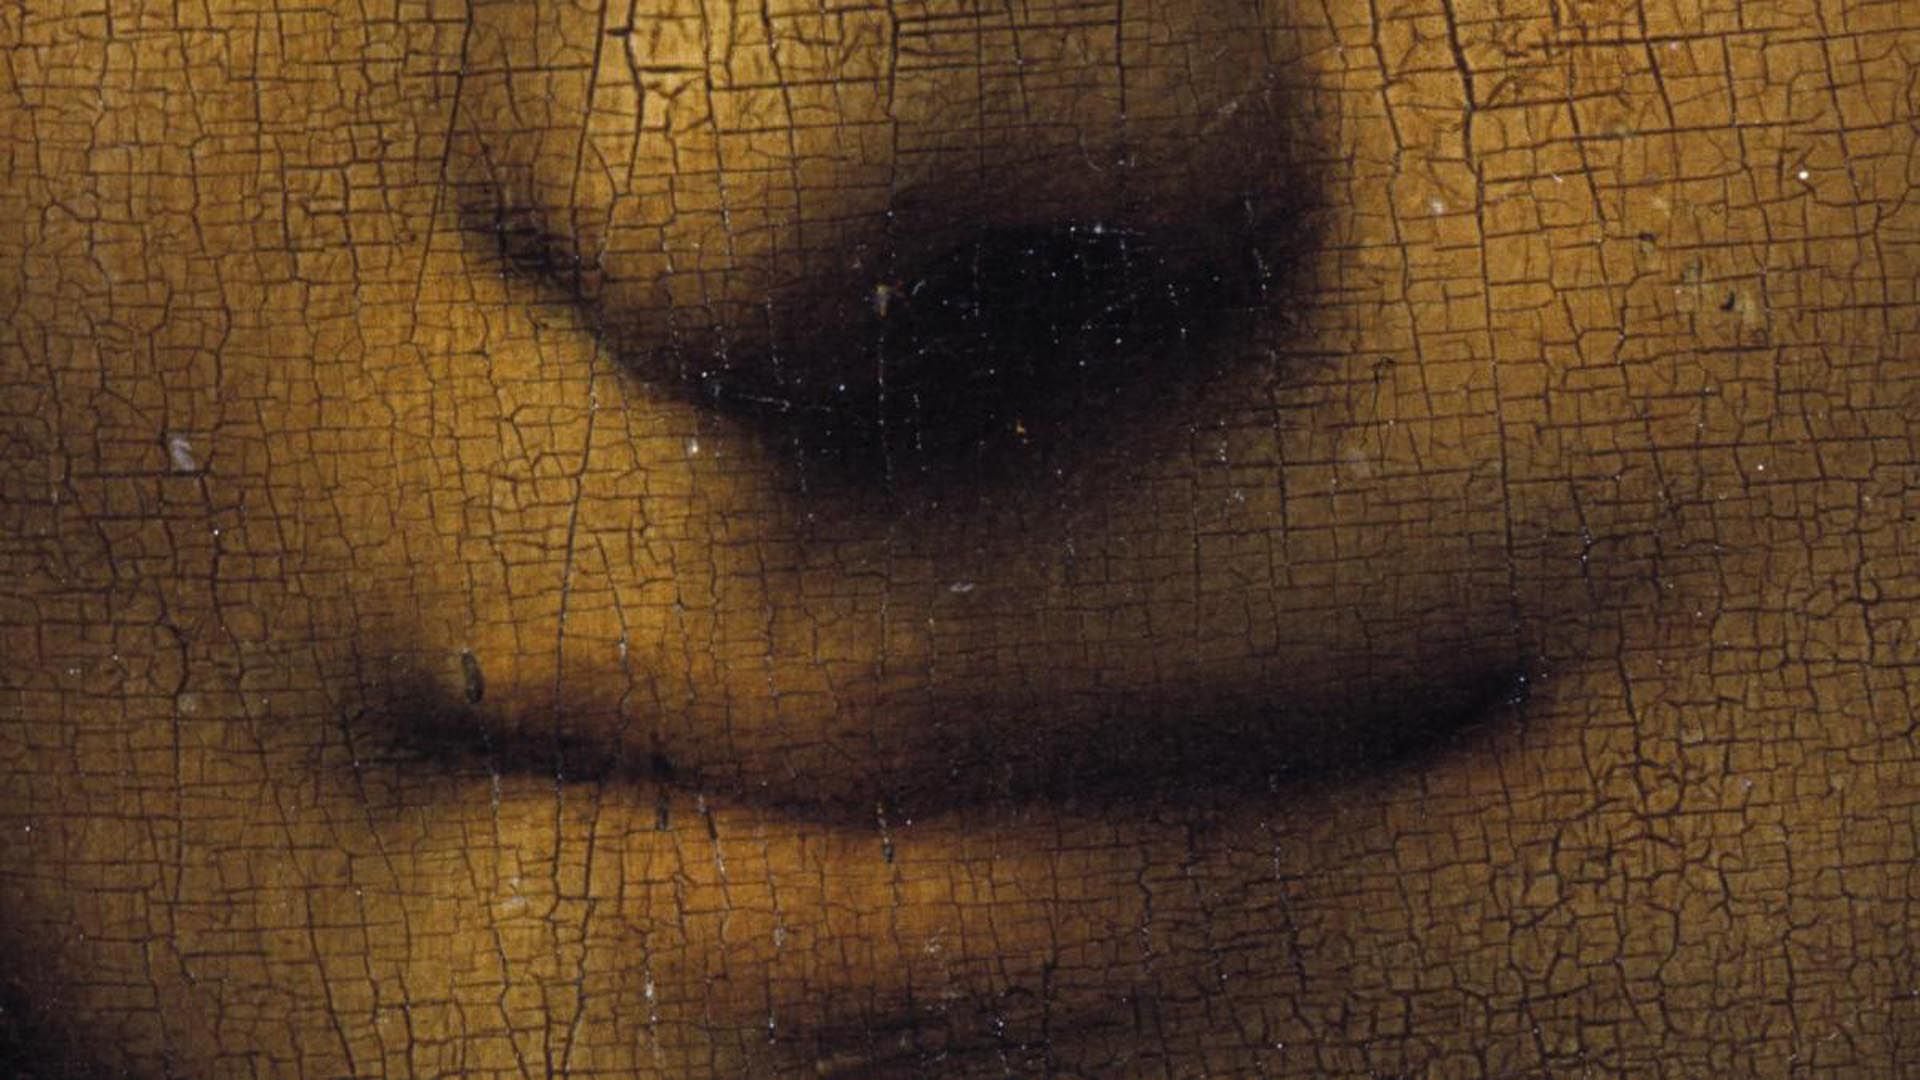 Los científicos creen que Leonardo probablemente usó polvo de óxido de plomo para espesar y ayudar a secar su pintura cuando comenzó a trabajar en el retrato.